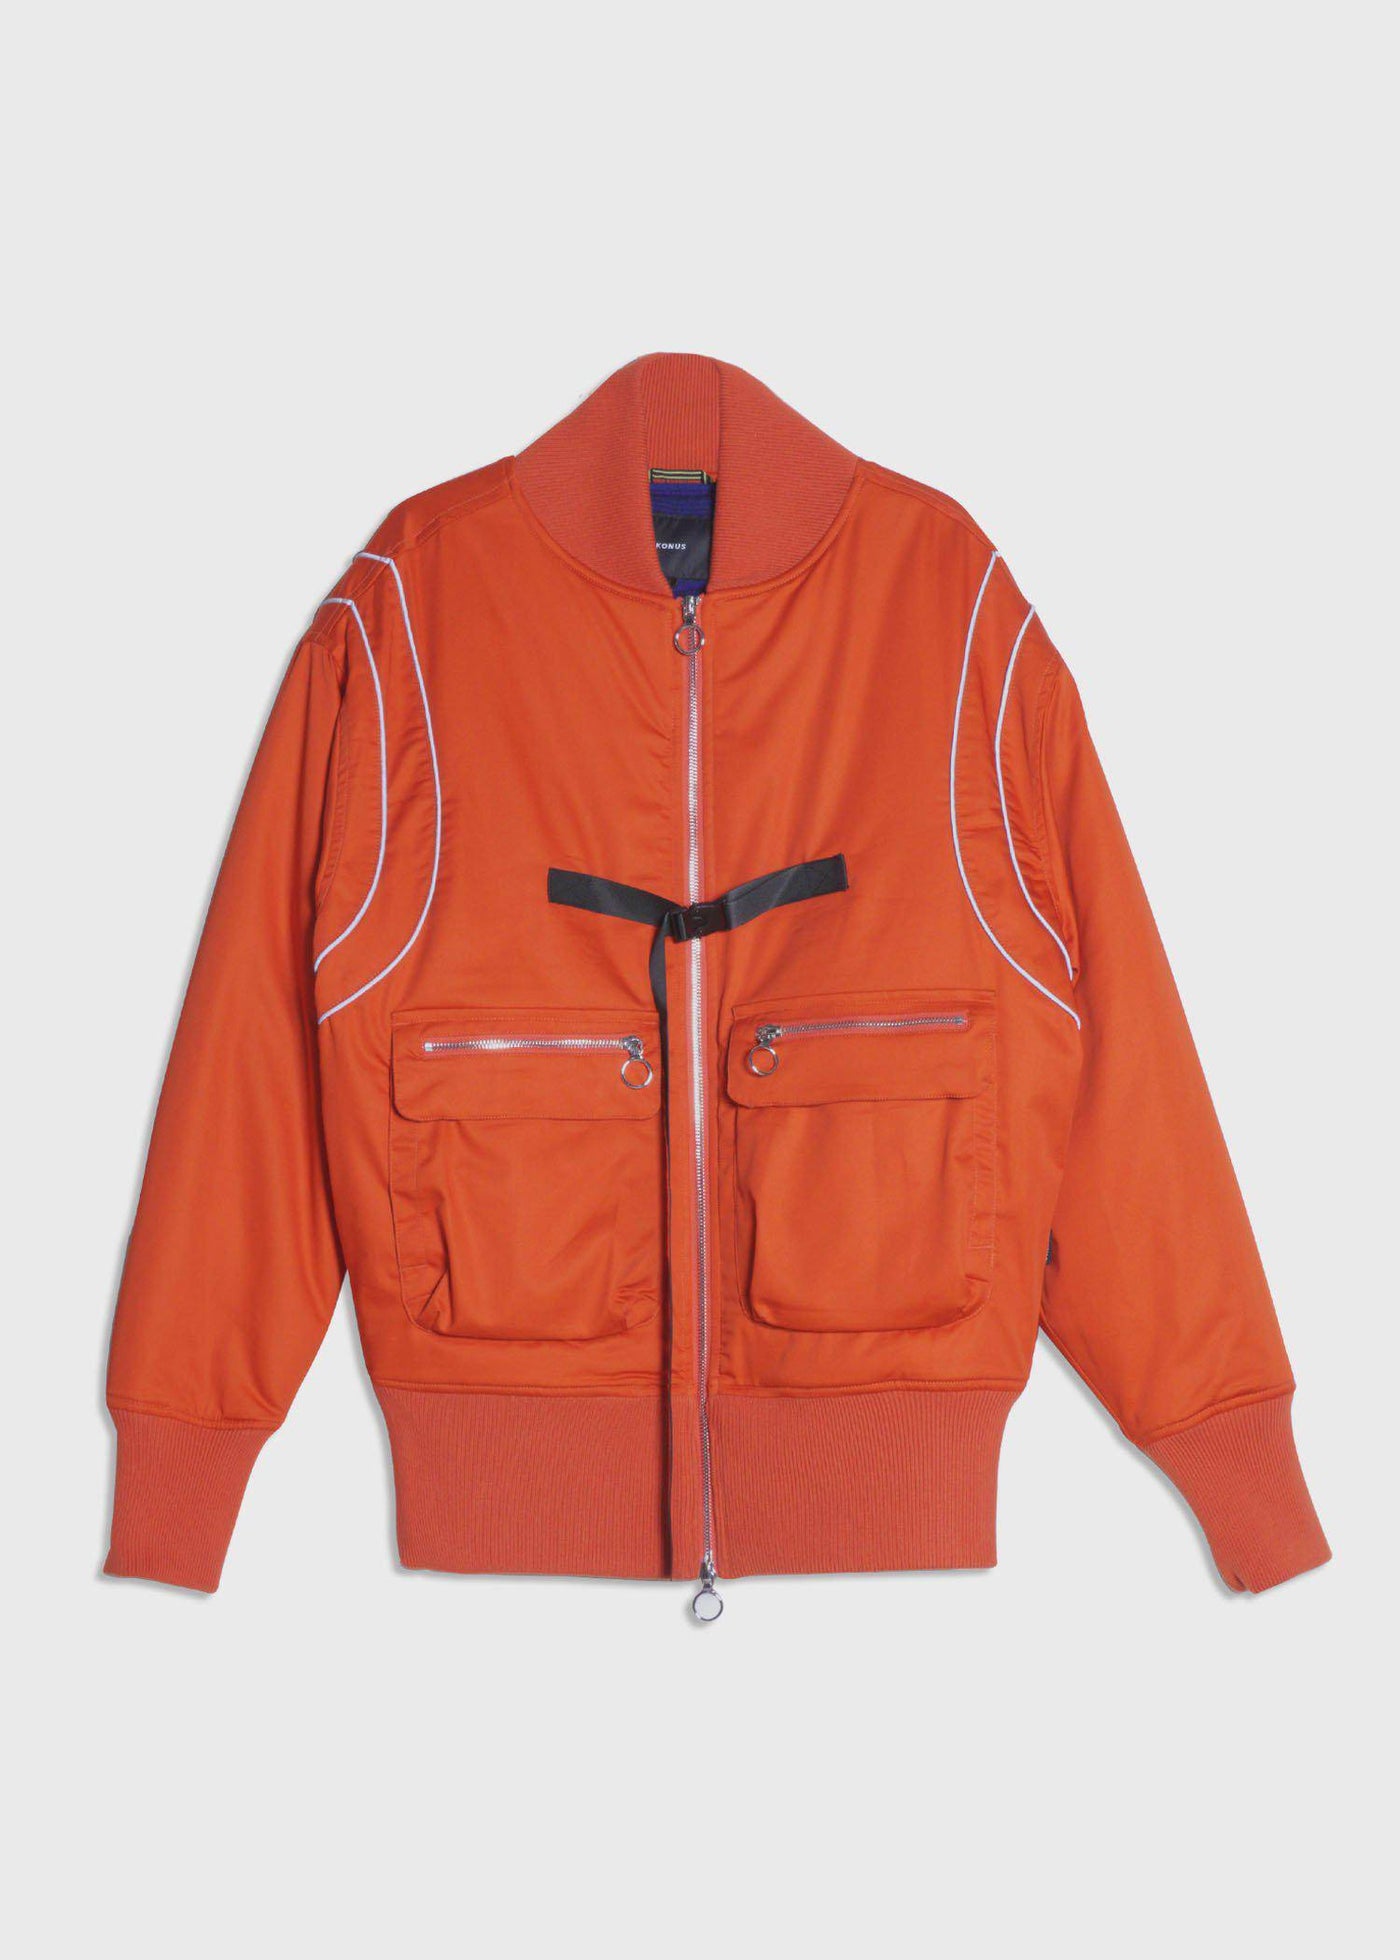 Men's Oversize Bomber Jacket in Orange by Shop at Konus